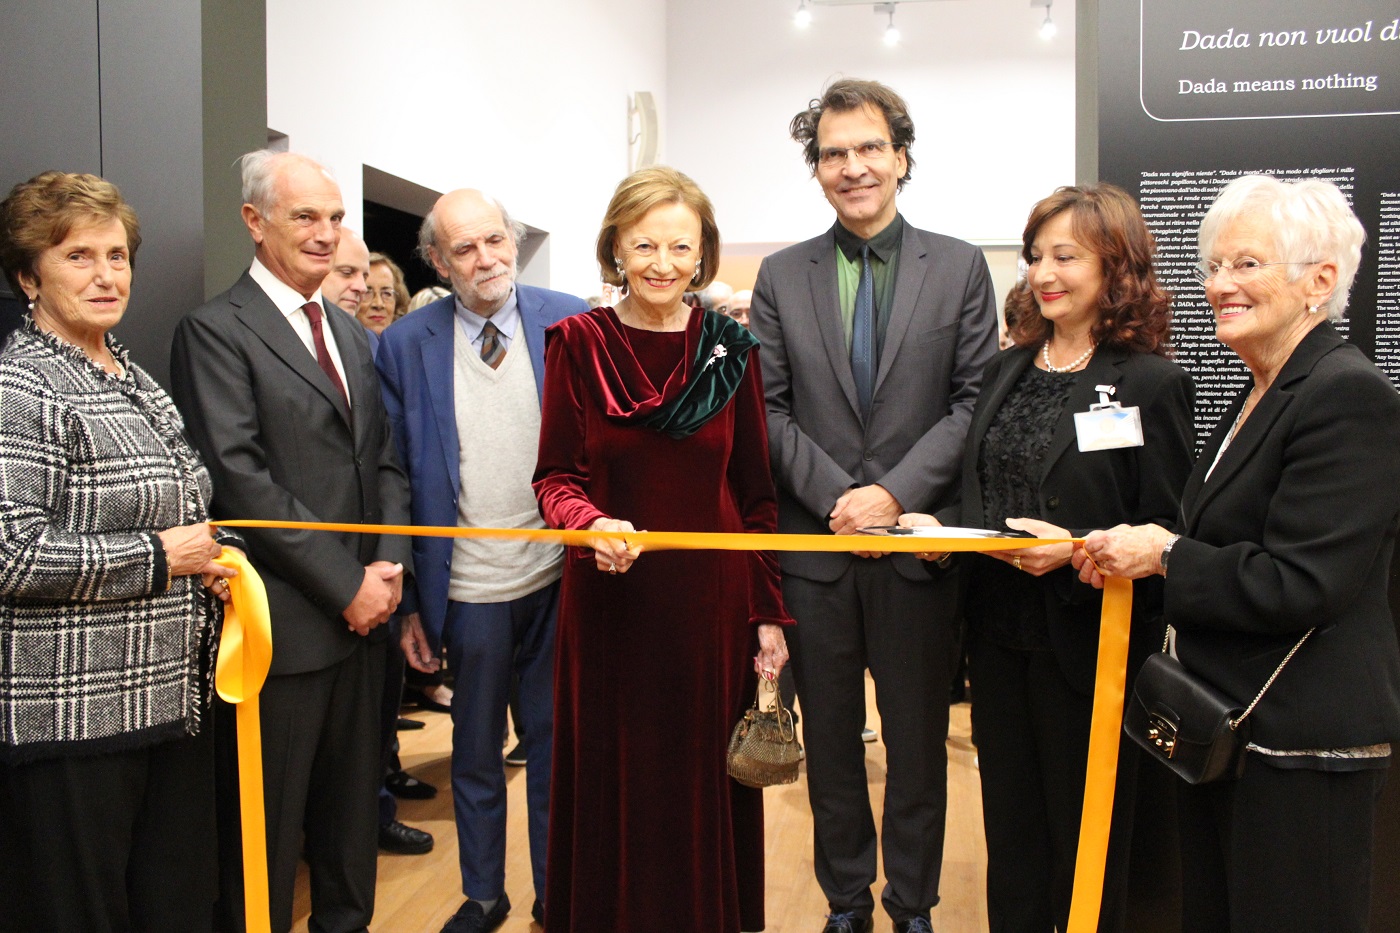 Foto ALBA: inaugurata la mostra alla Fondazione Ferrero